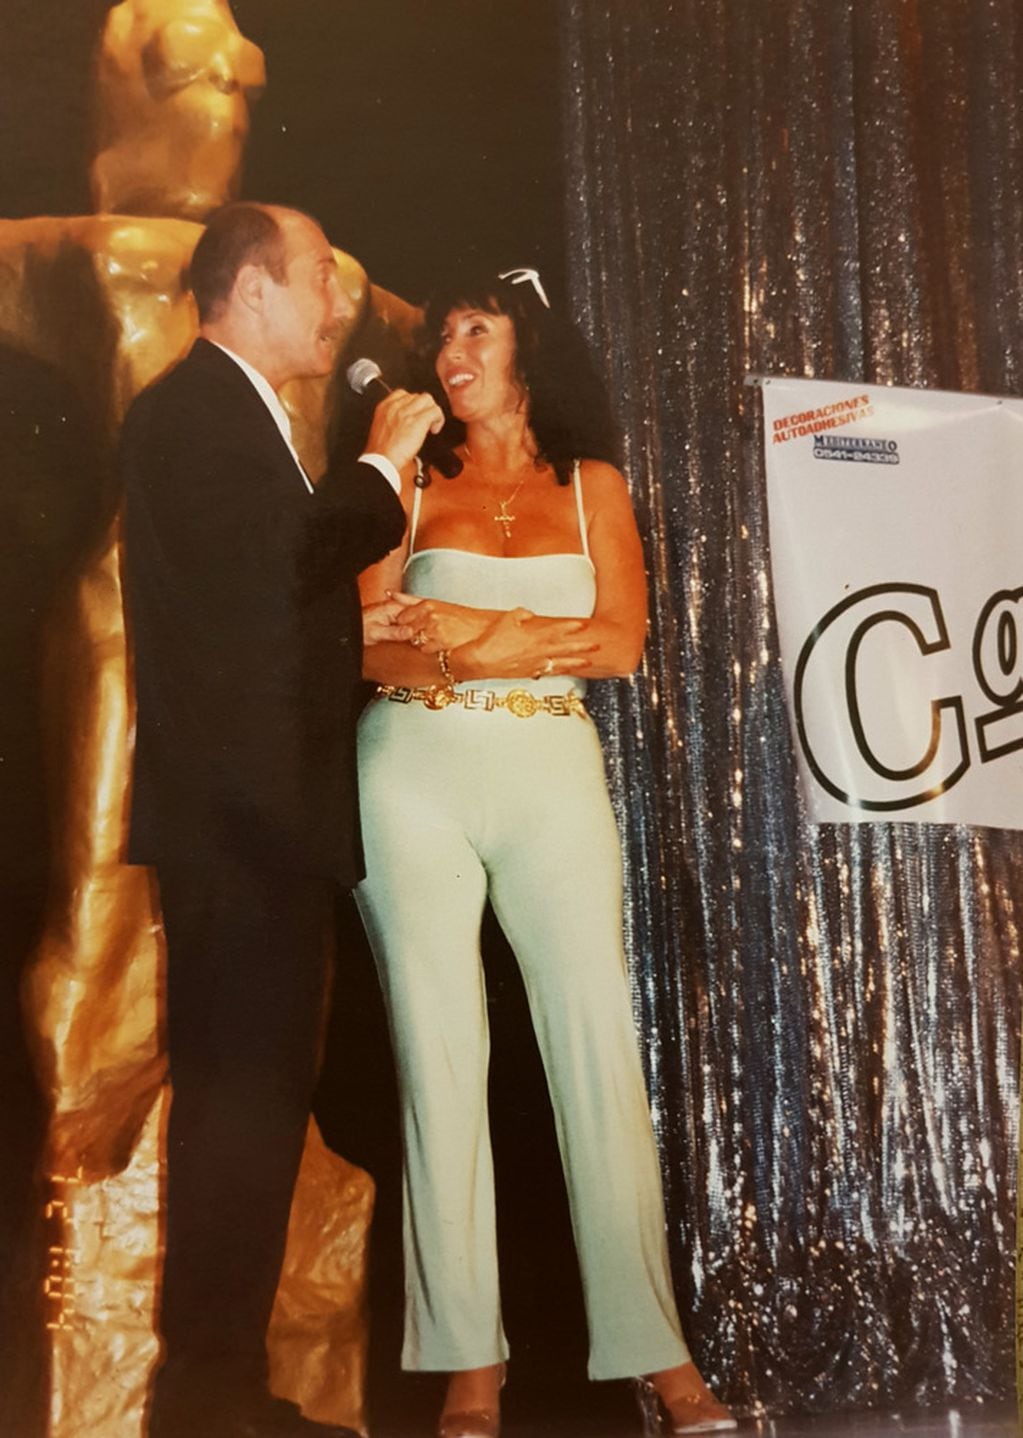 Moria Casán en Villa Carlos Paz junto al conductor "Lagarto" Guizzardi en la entrega de los premios "Carlos".